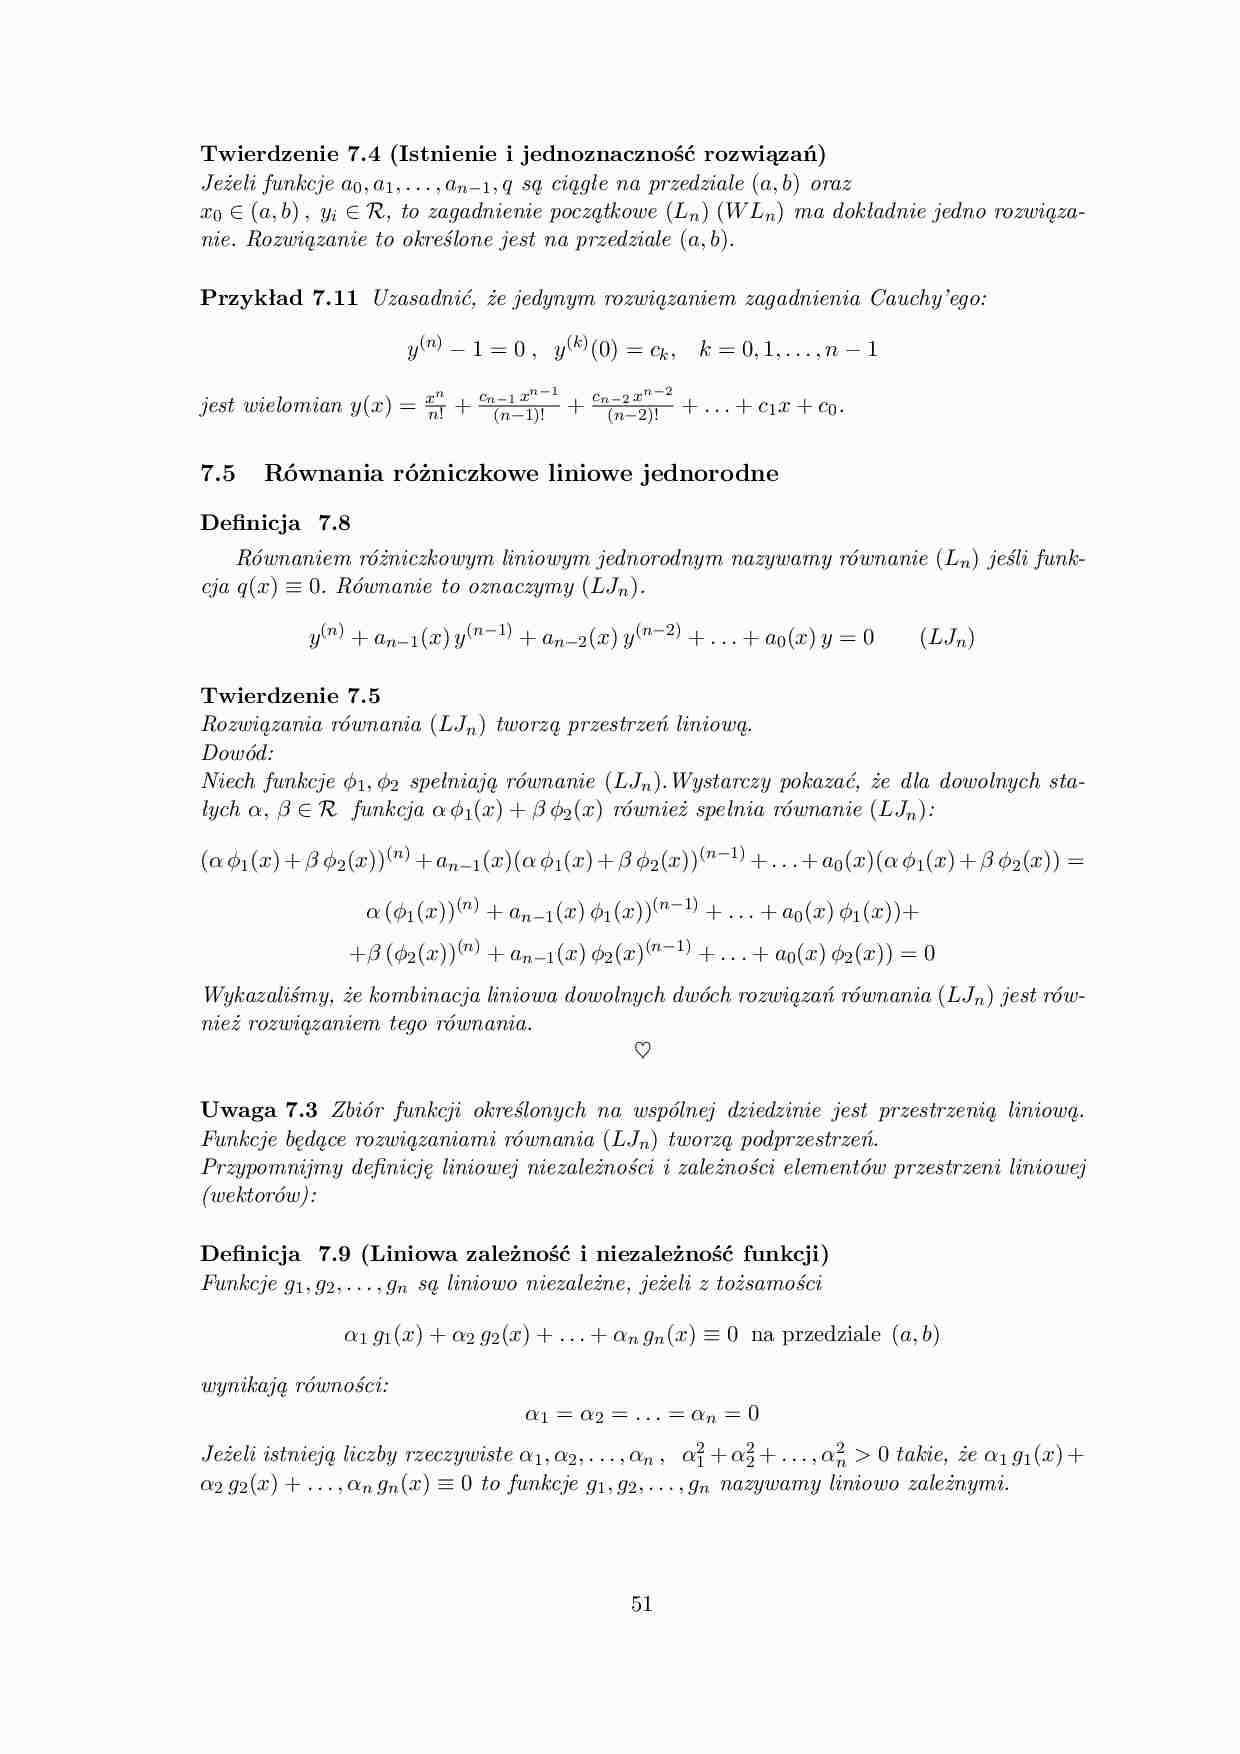 Równania różniczkowe liniowe jednorodne - omówienie  - strona 1